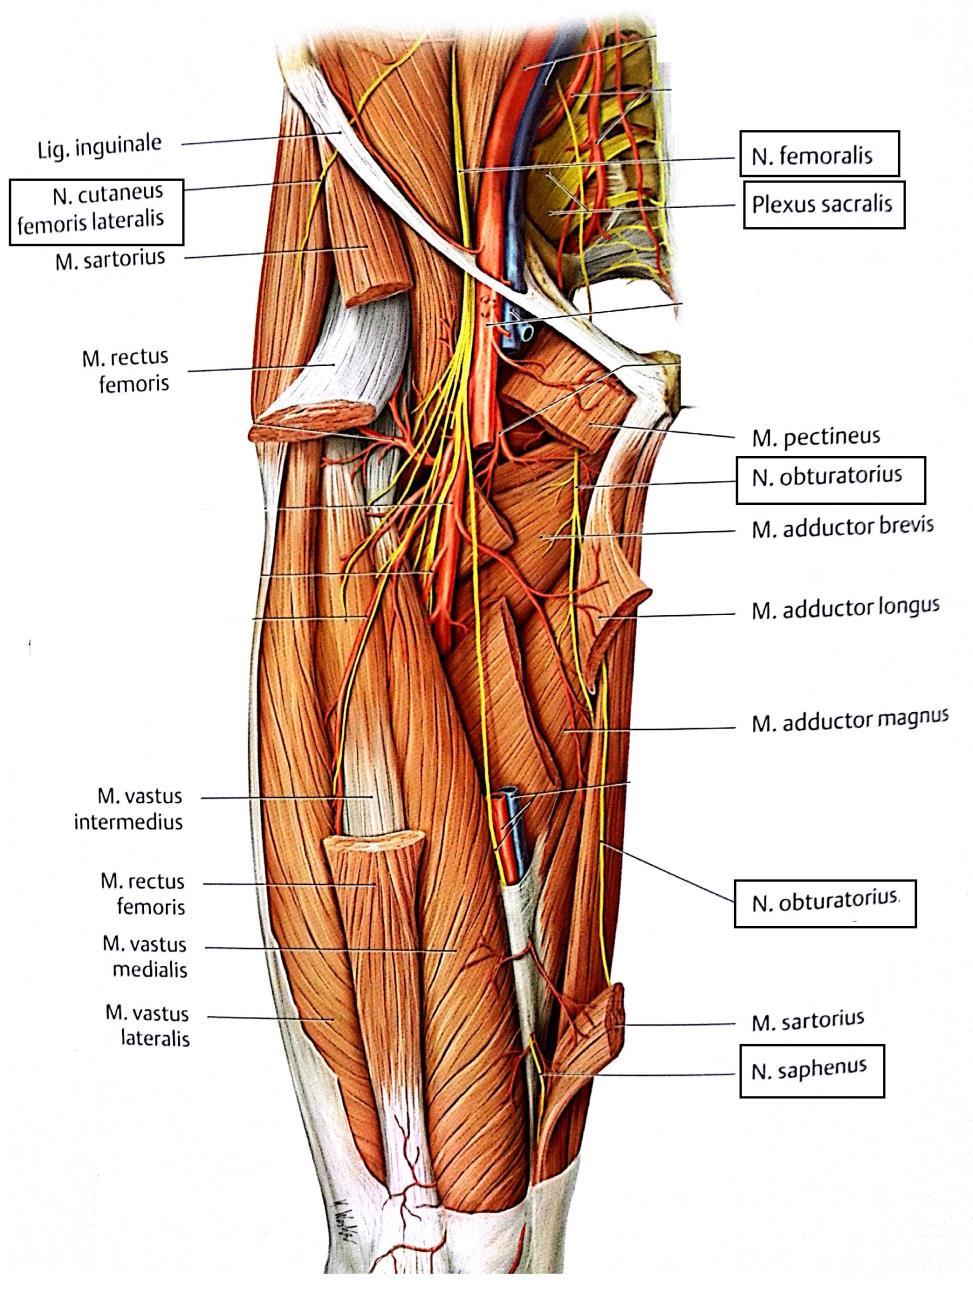 18 Nervus cutaneus lateralis femoris. N. cutaneus lateralis femoris (KUVA 7) tai lähteestä riippuen n. cutaneus femoris lateralis on tuntohermo, joka lähtee nikamavälistä L2 L3.